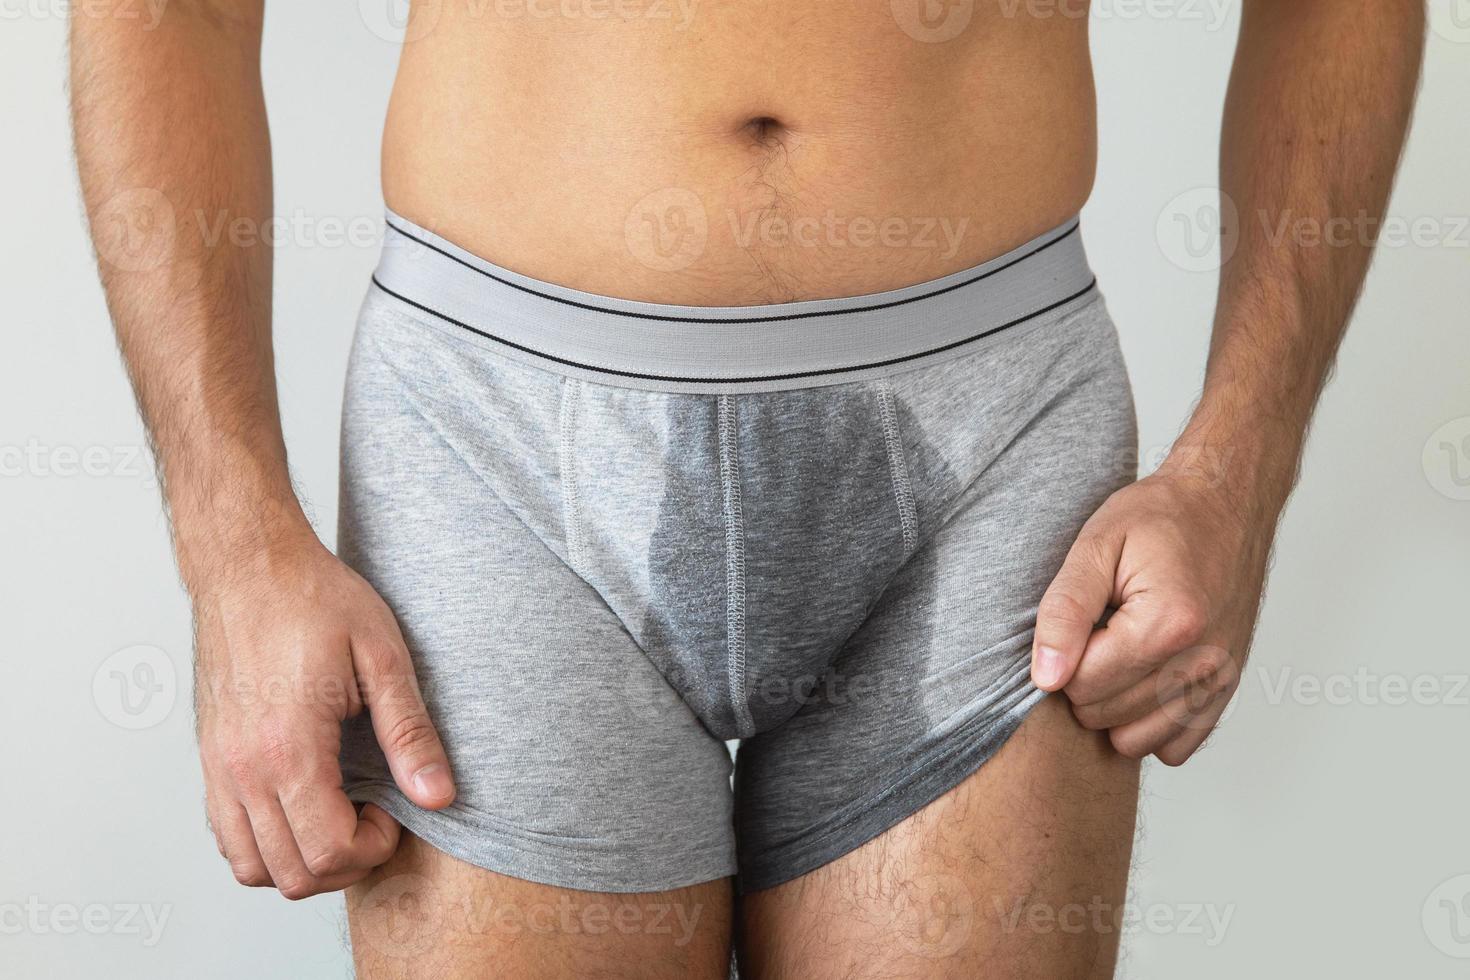 homem com cuecas molhadas por causa da incontinência urinária foto